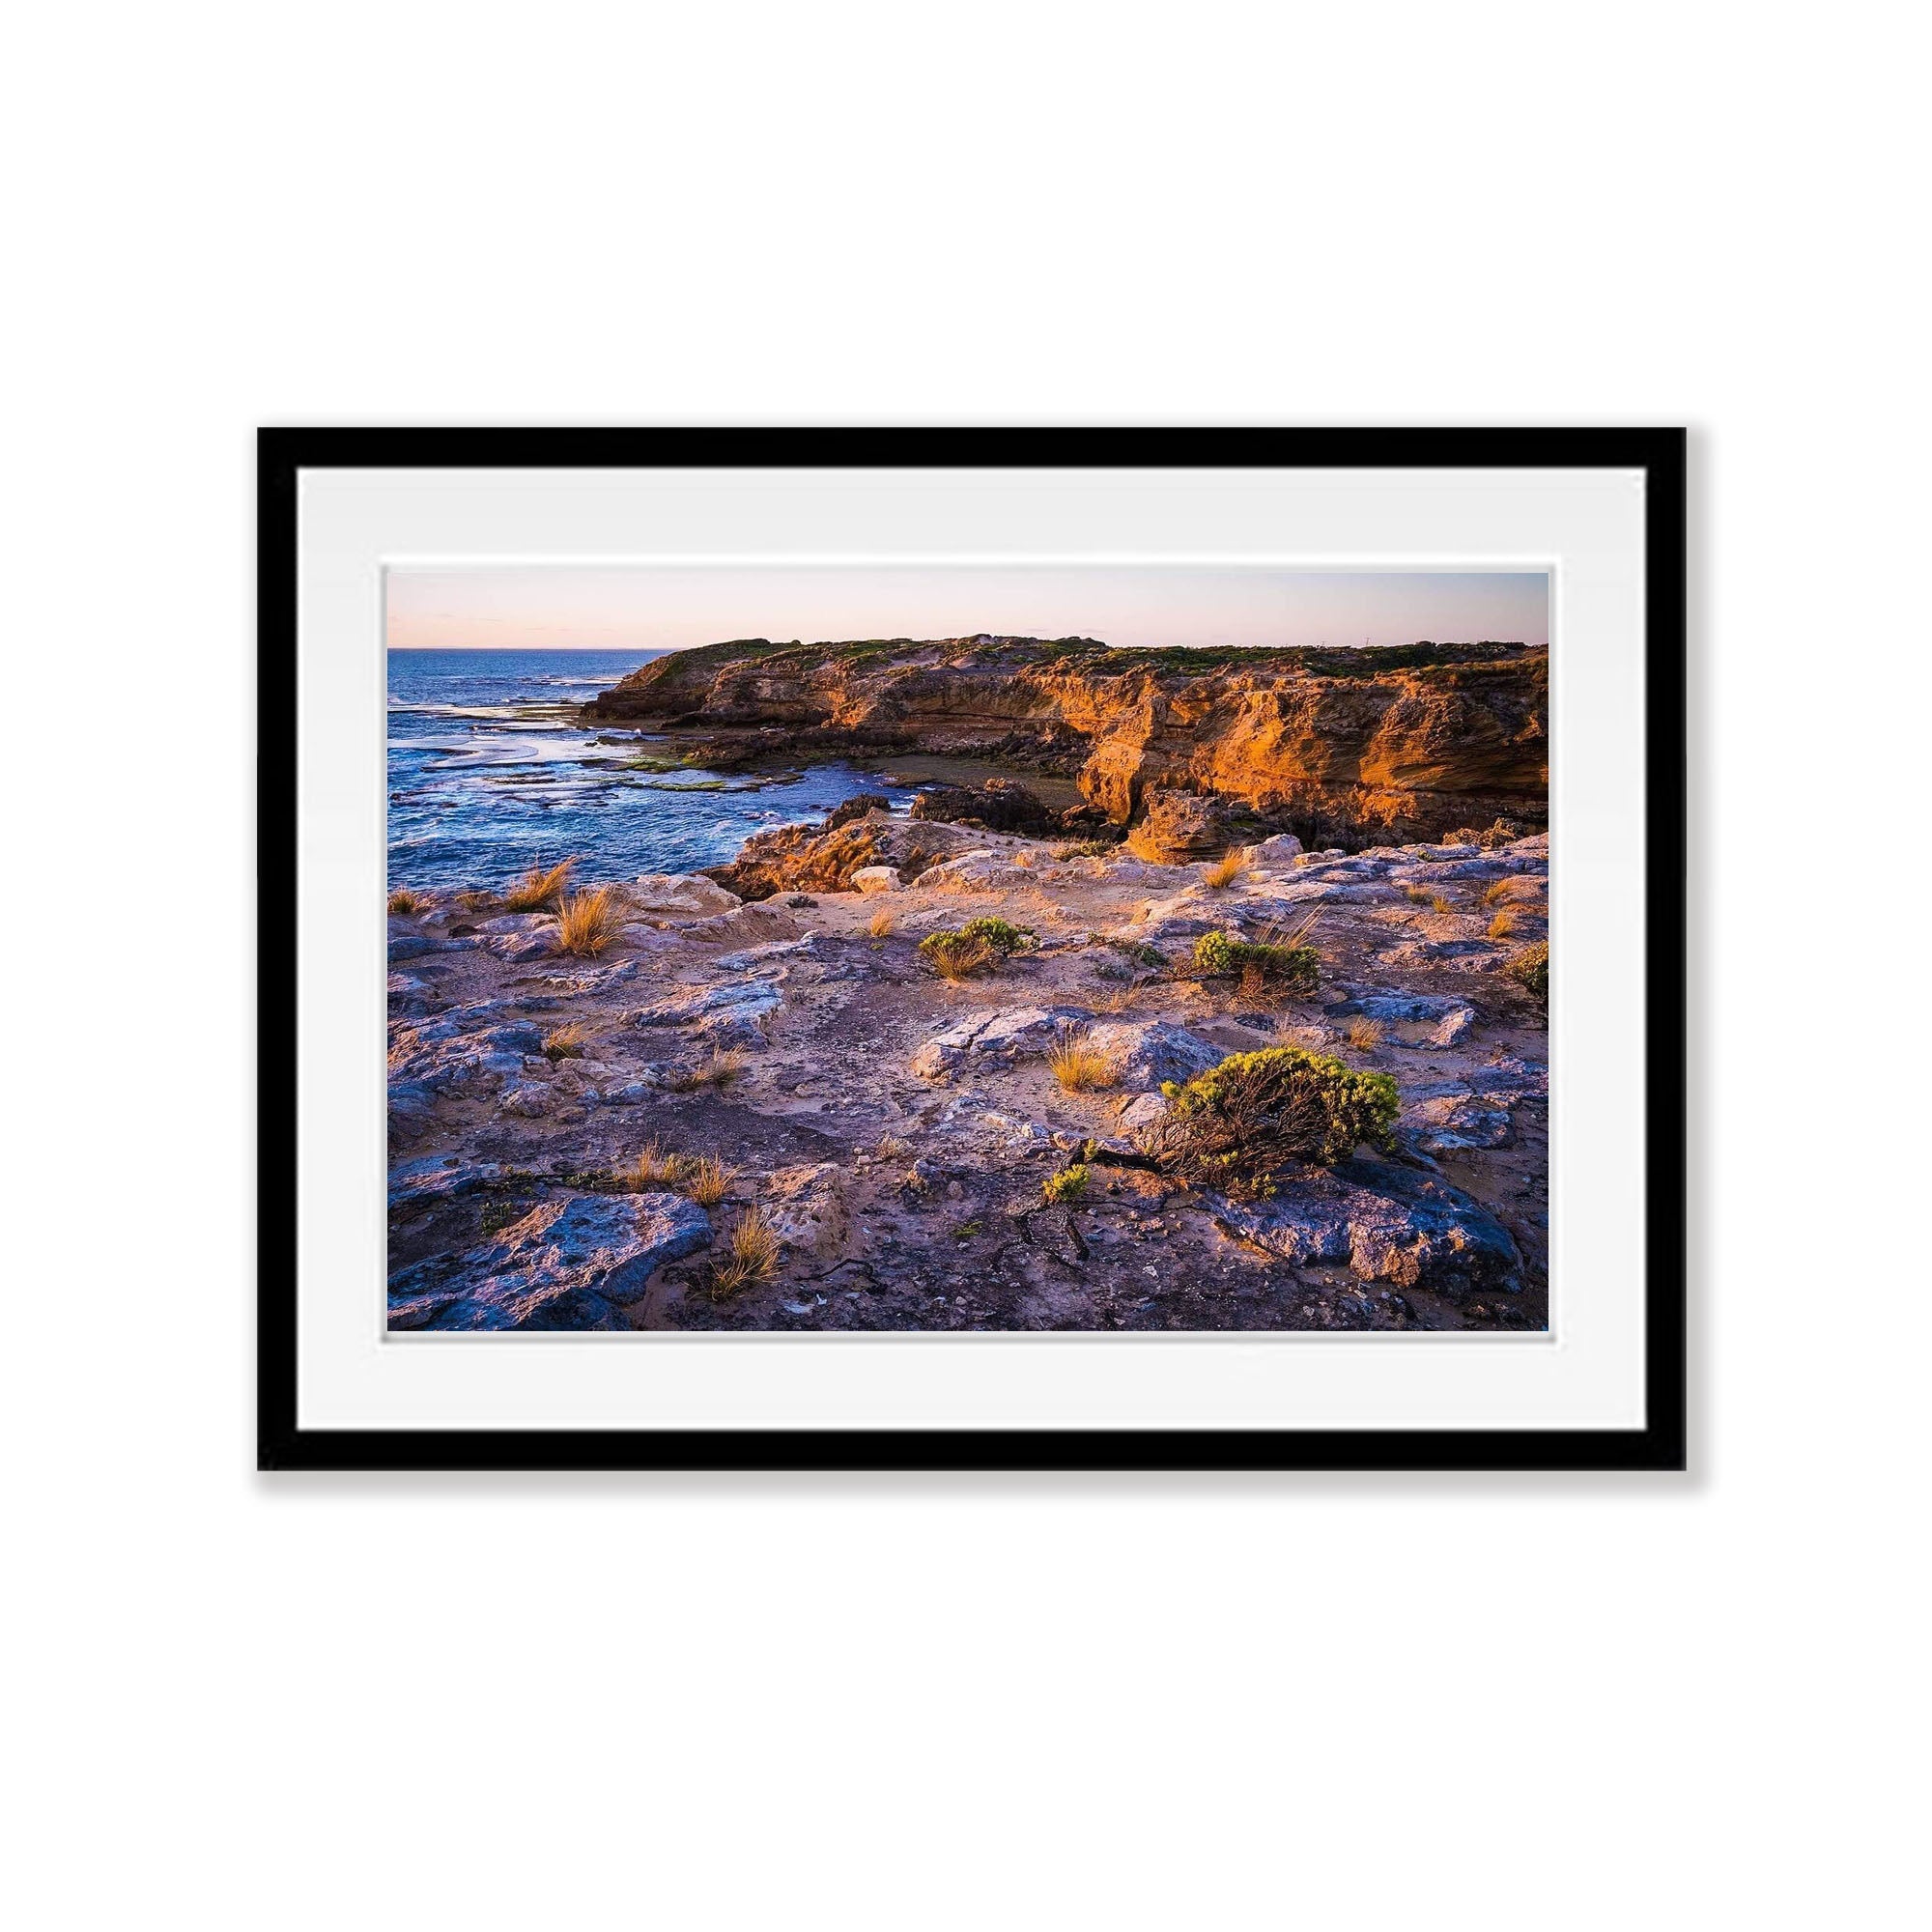 Coastal Beauty, Rye, Mornington Peninsula, VIC